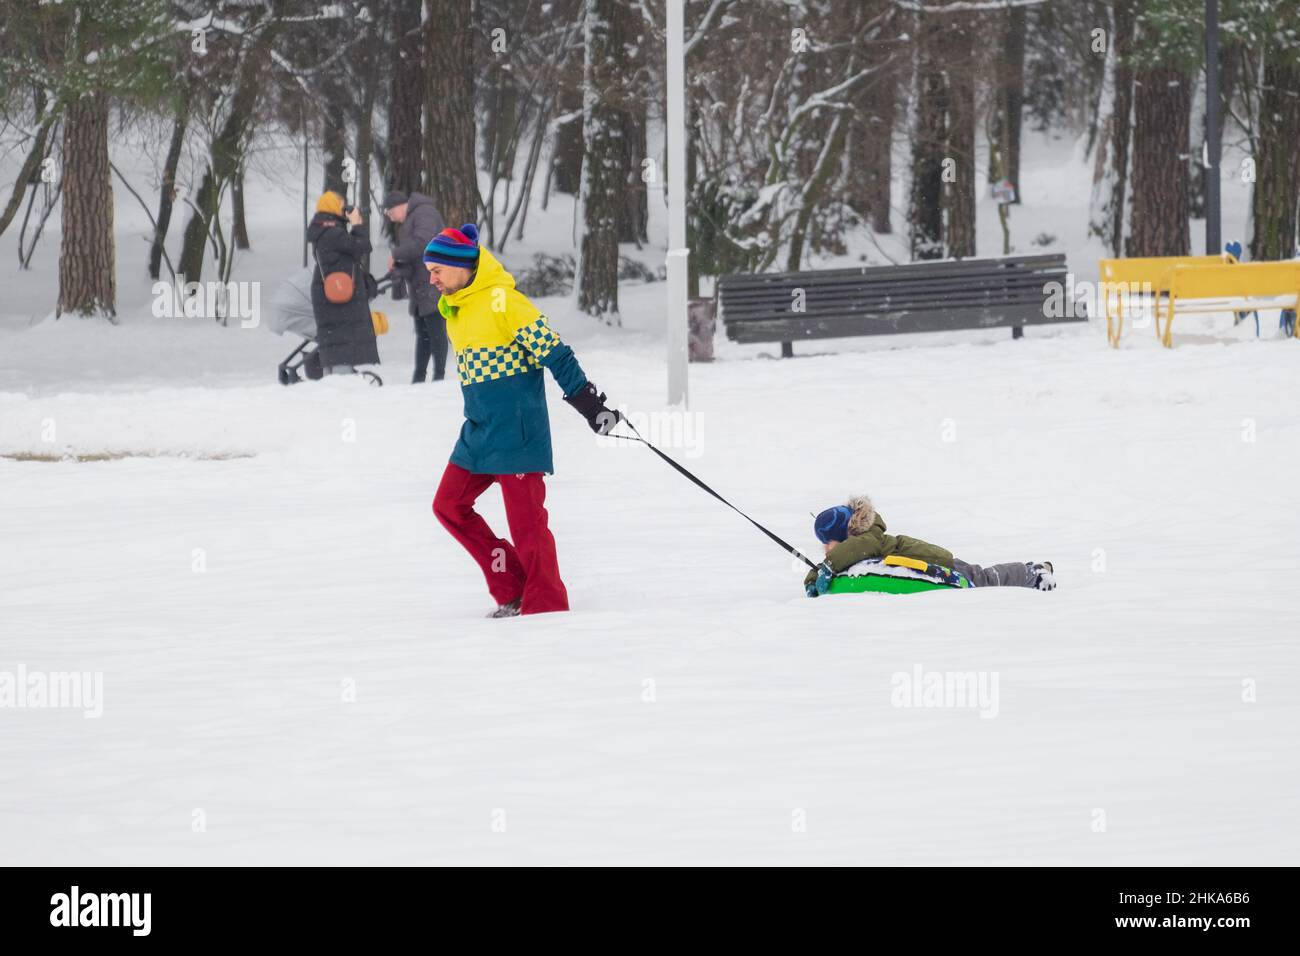 Padre triste tira de un trineo (tubing) en la nieve en el parque, y su hijo miente en el trineo y disfruta de la diversión en invierno. Foto de stock